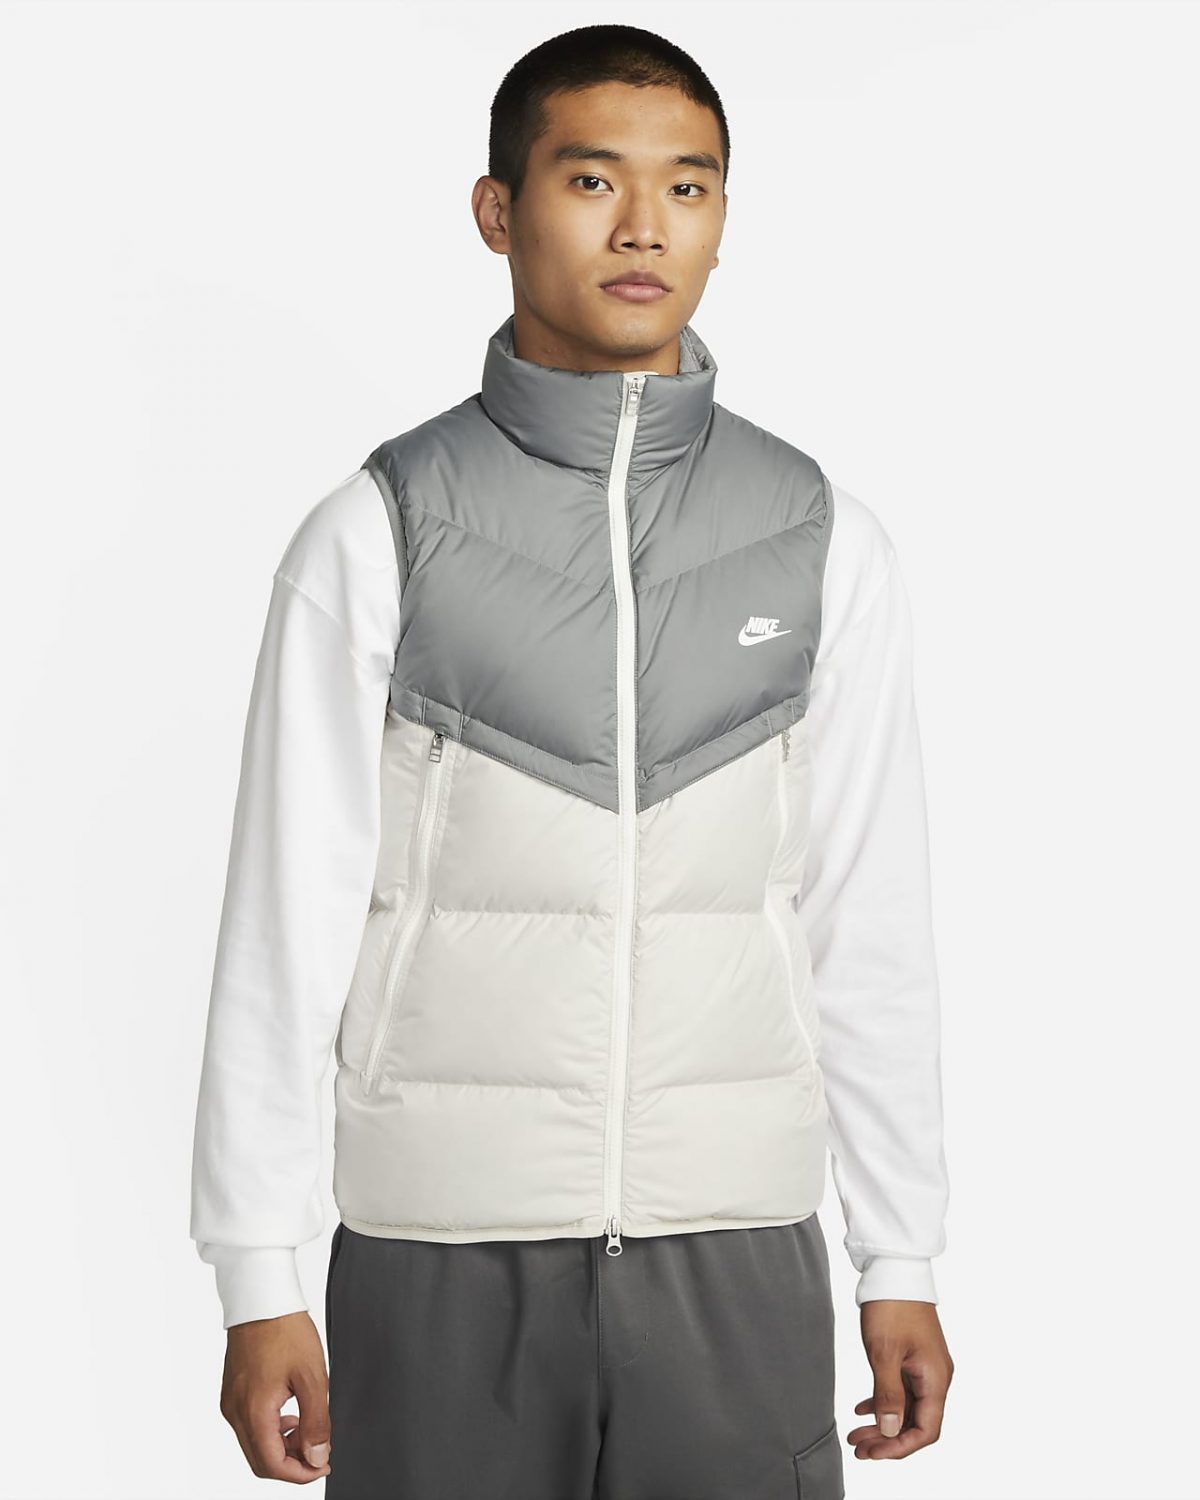 Мужская спортивная одежда Nike Storm-FIT Windrunner фото